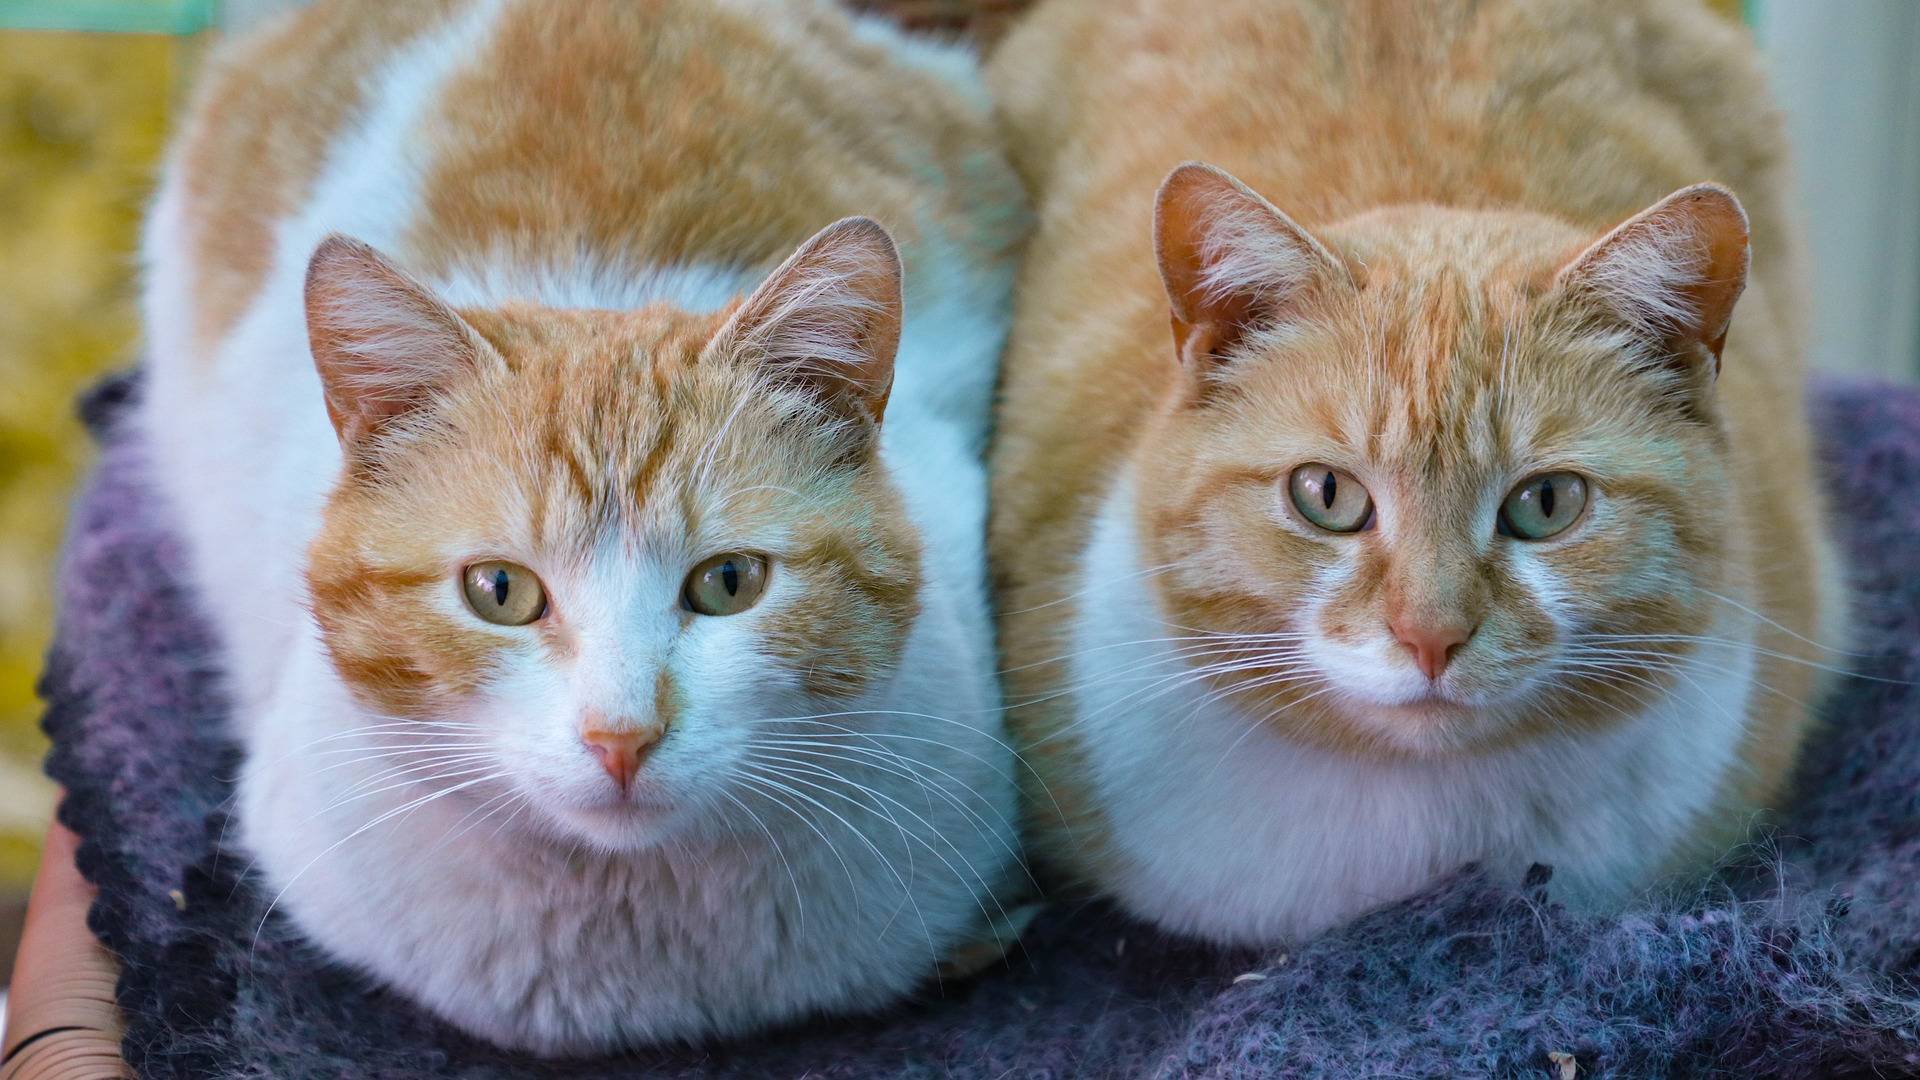 Tyytyväinen kissa - onko kissa erakko vai sosiaalinen? | Eläinkoulutus